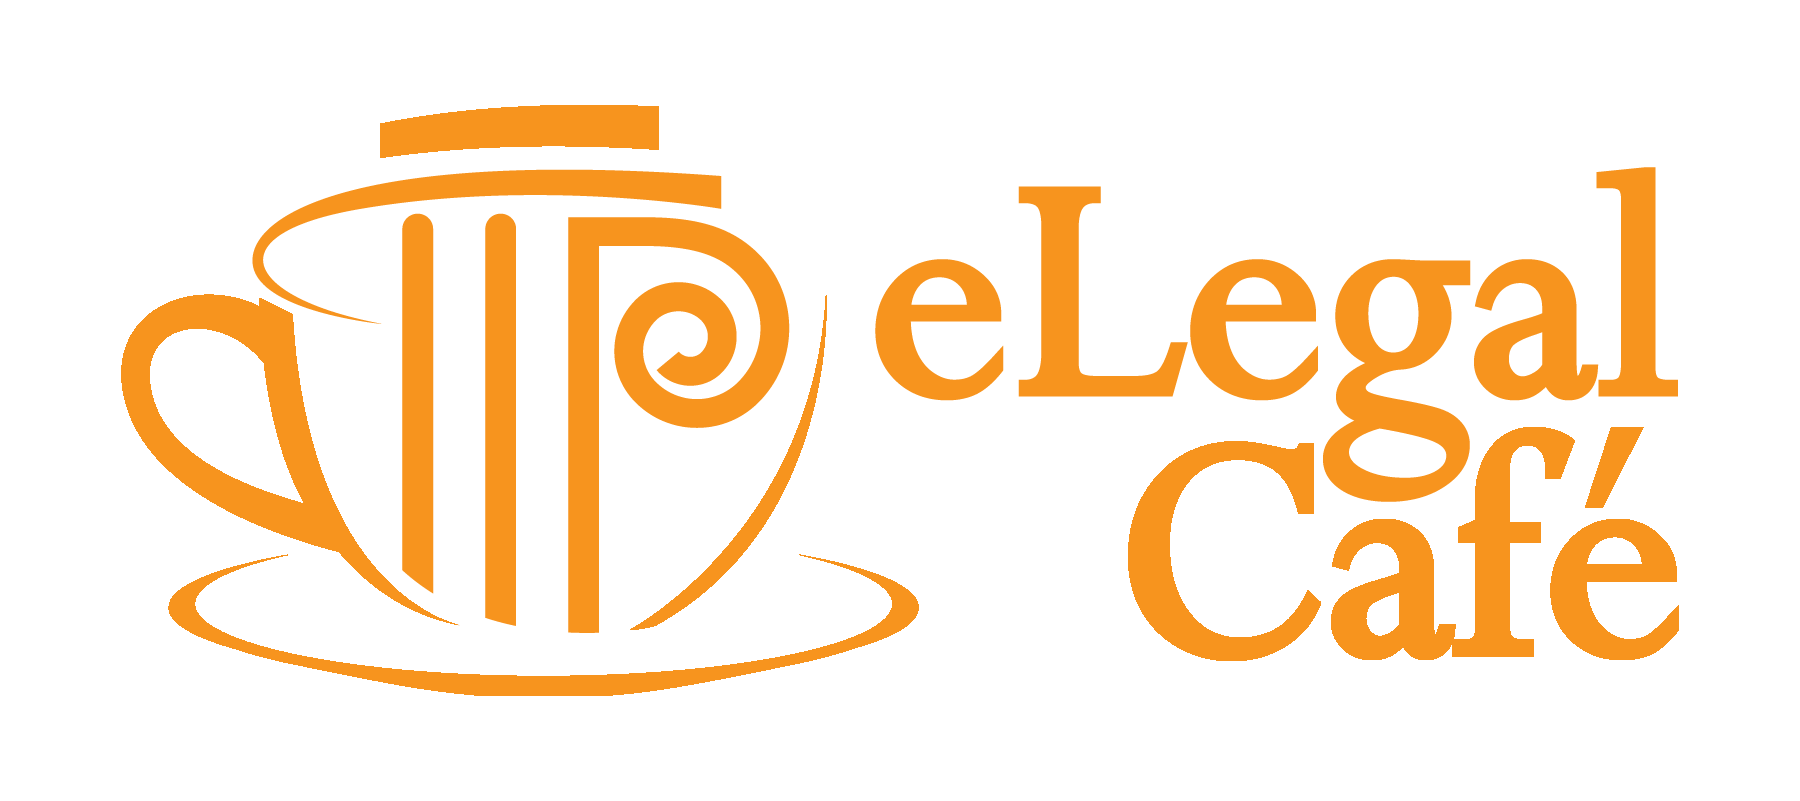 eLegal Cafe